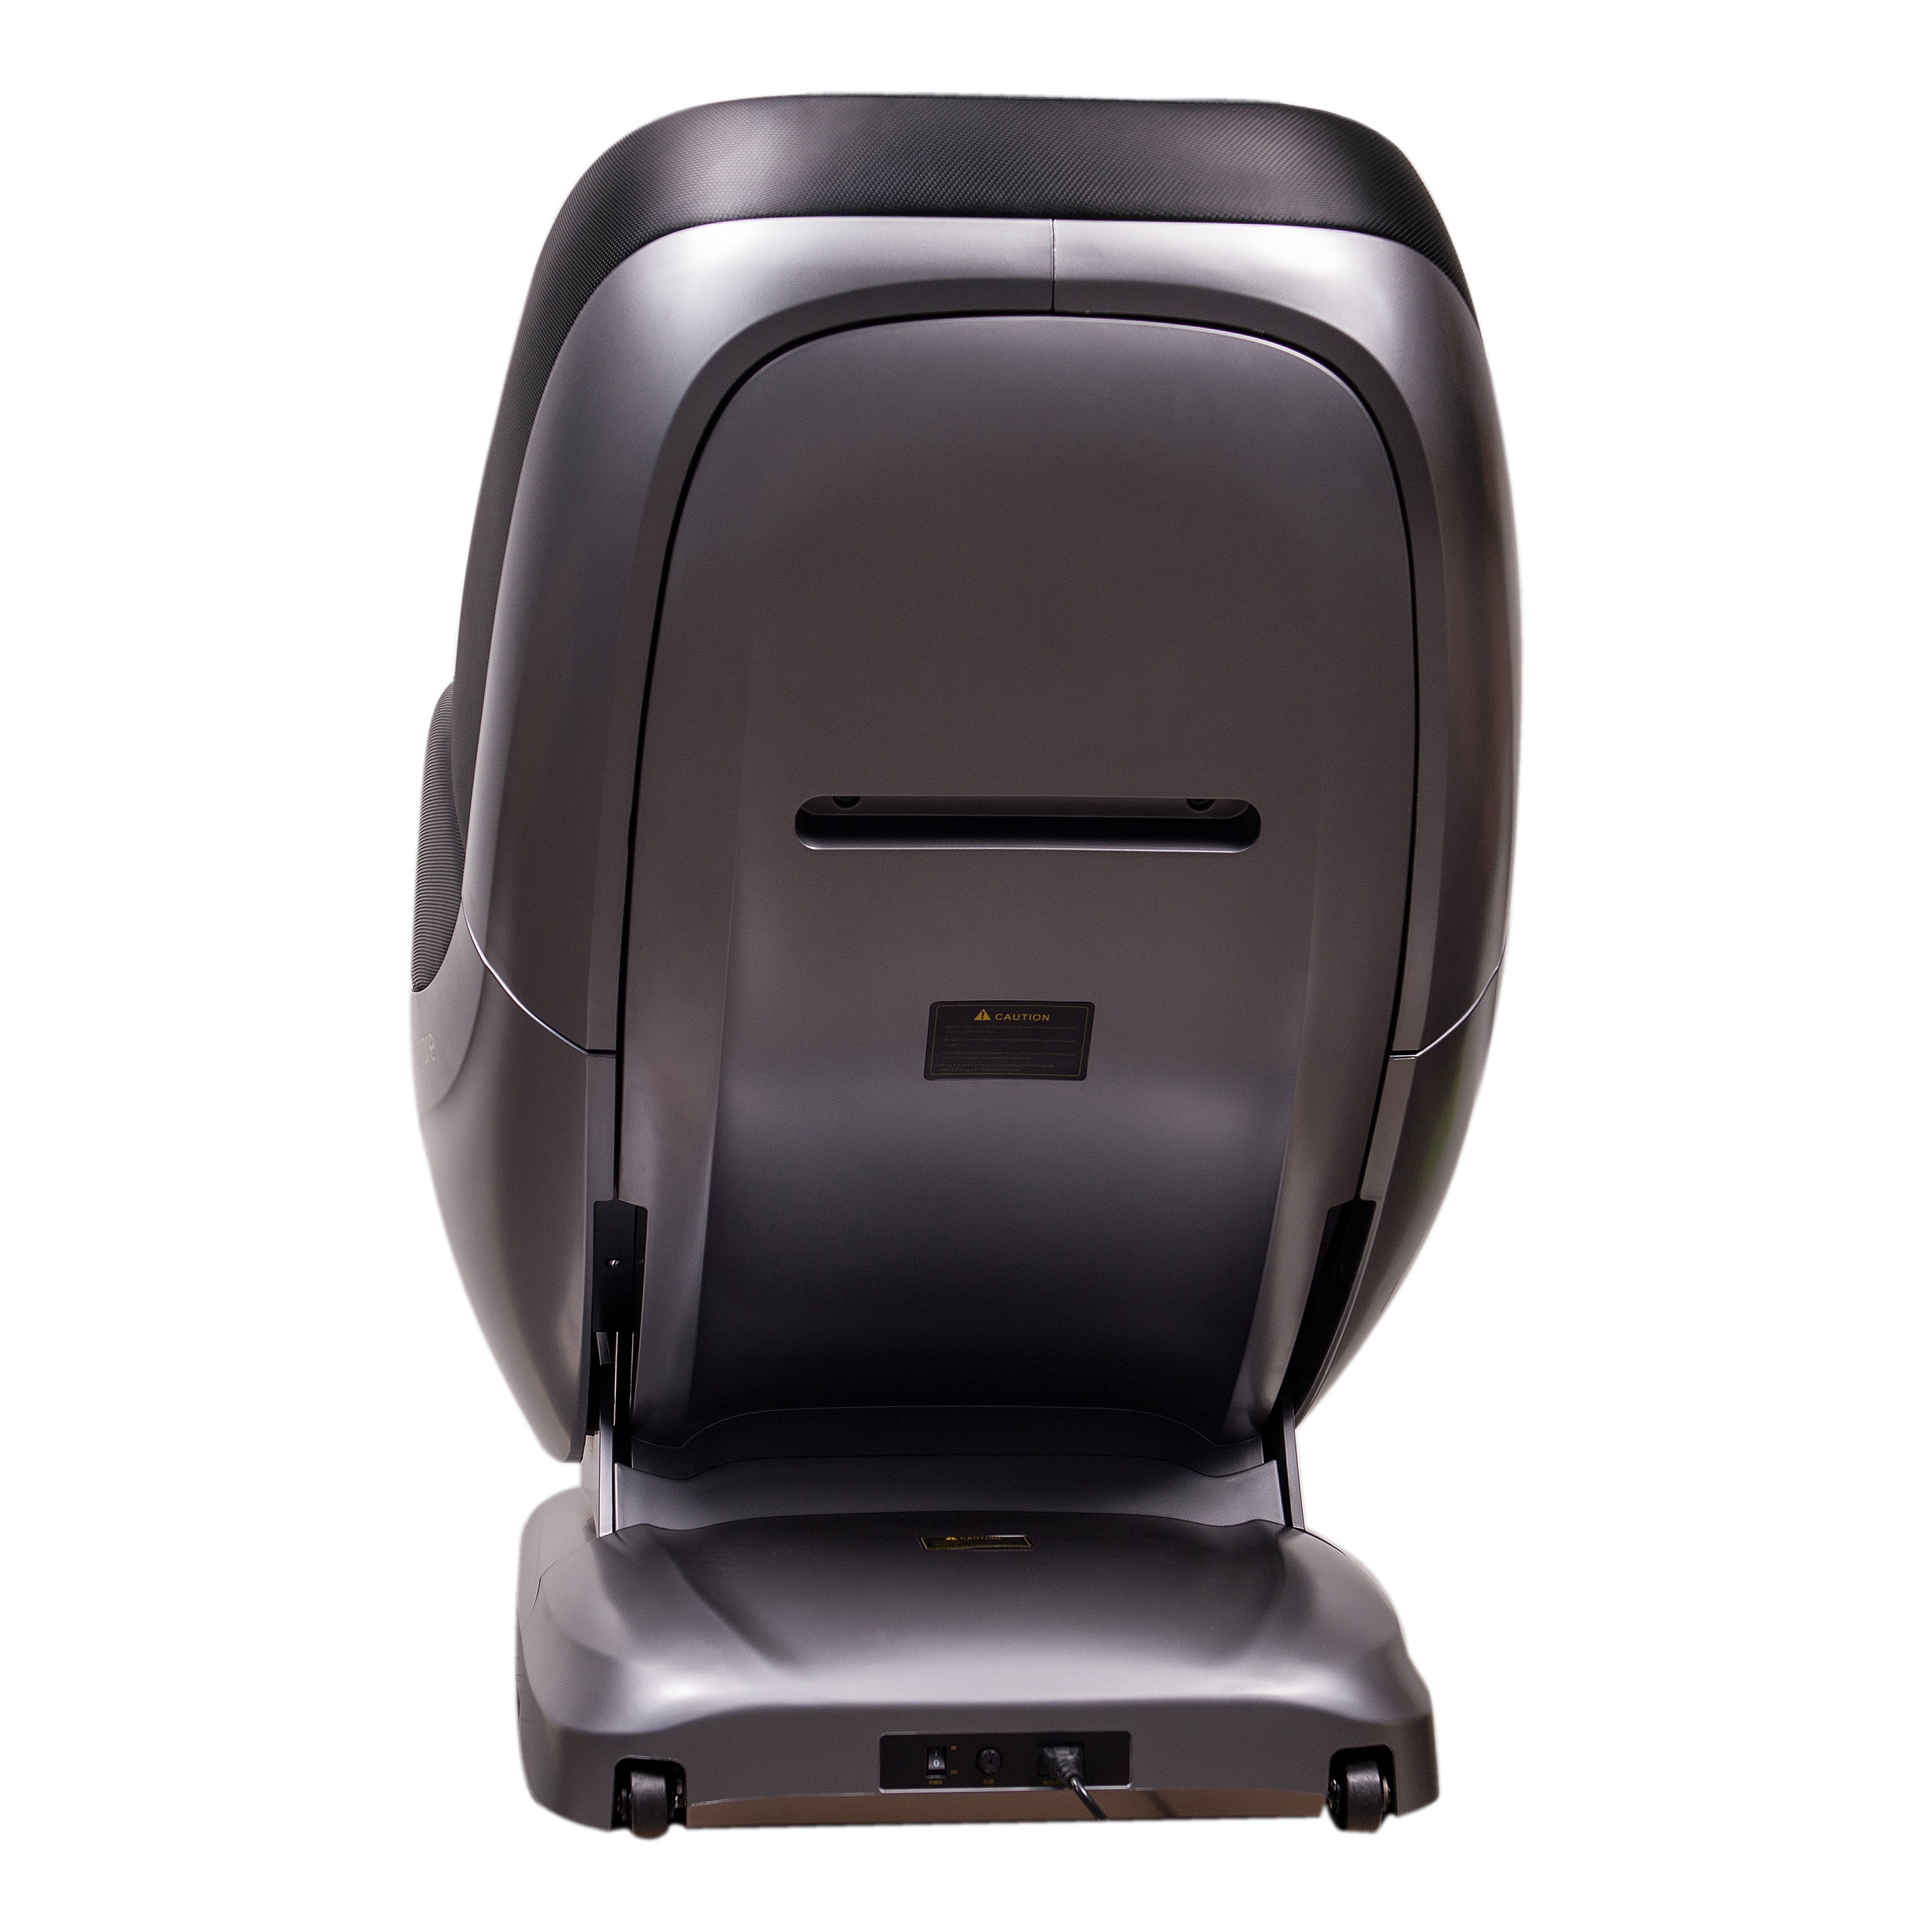 Lexco Ultimate 3D Massage Chair